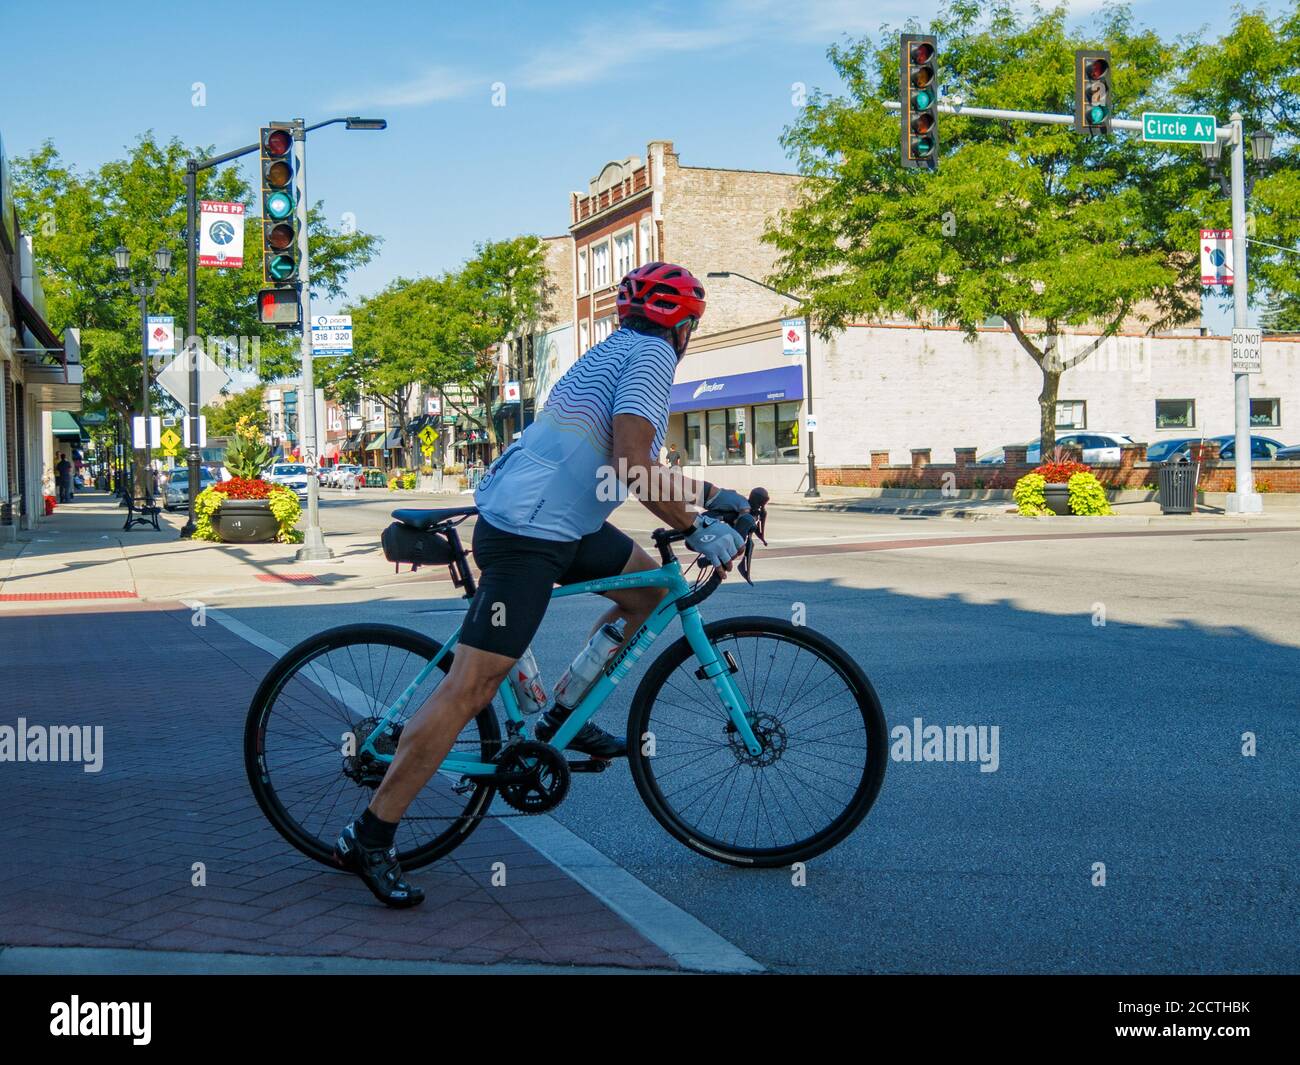 Radfahrer bereitet sich auf Kreuzung zu überqueren. Forest Park, Illinois. Stockfoto